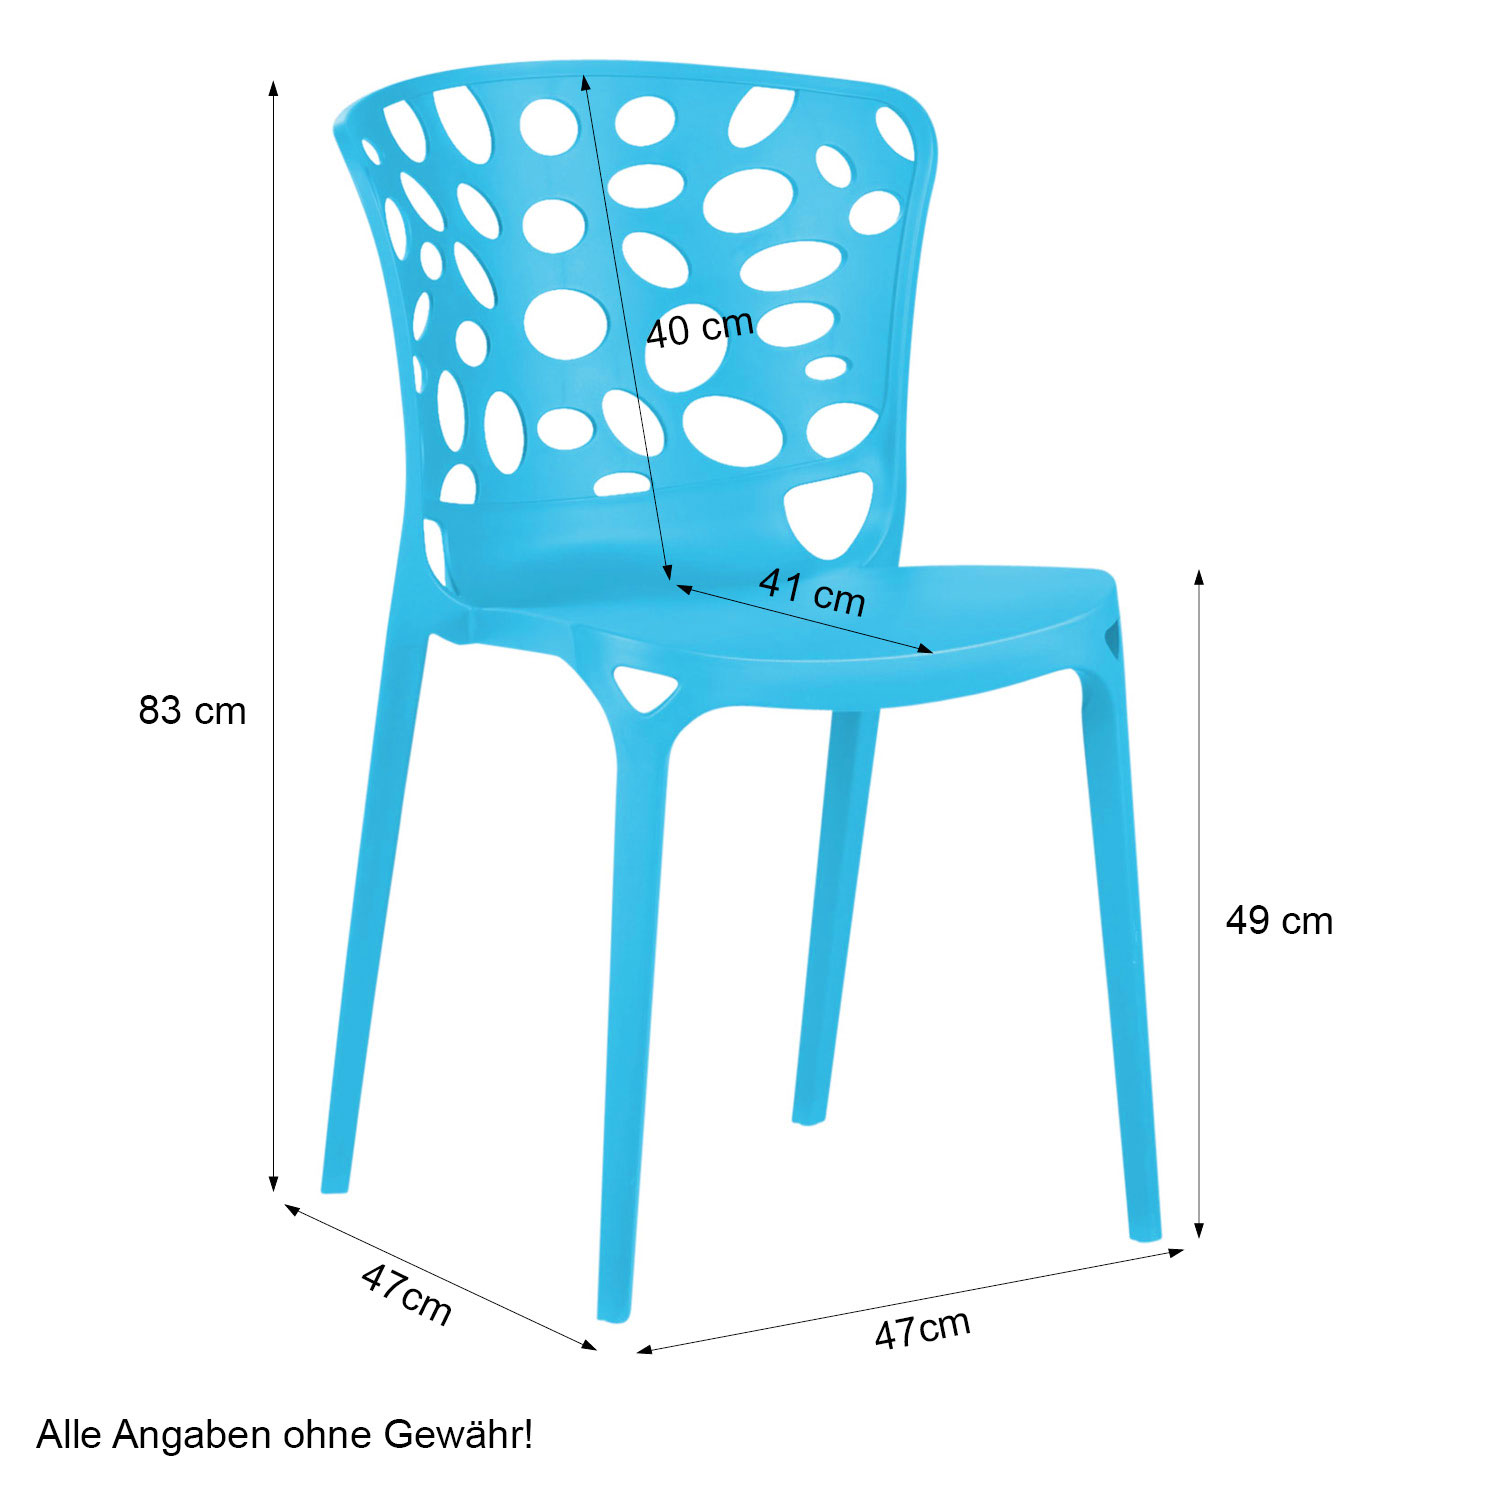 Gartenstuhl 6er Set Modern Blau Stühle Küchenstühle Kunststoff Stapelstühle Balkonstuhl Outdoor-Stuhl